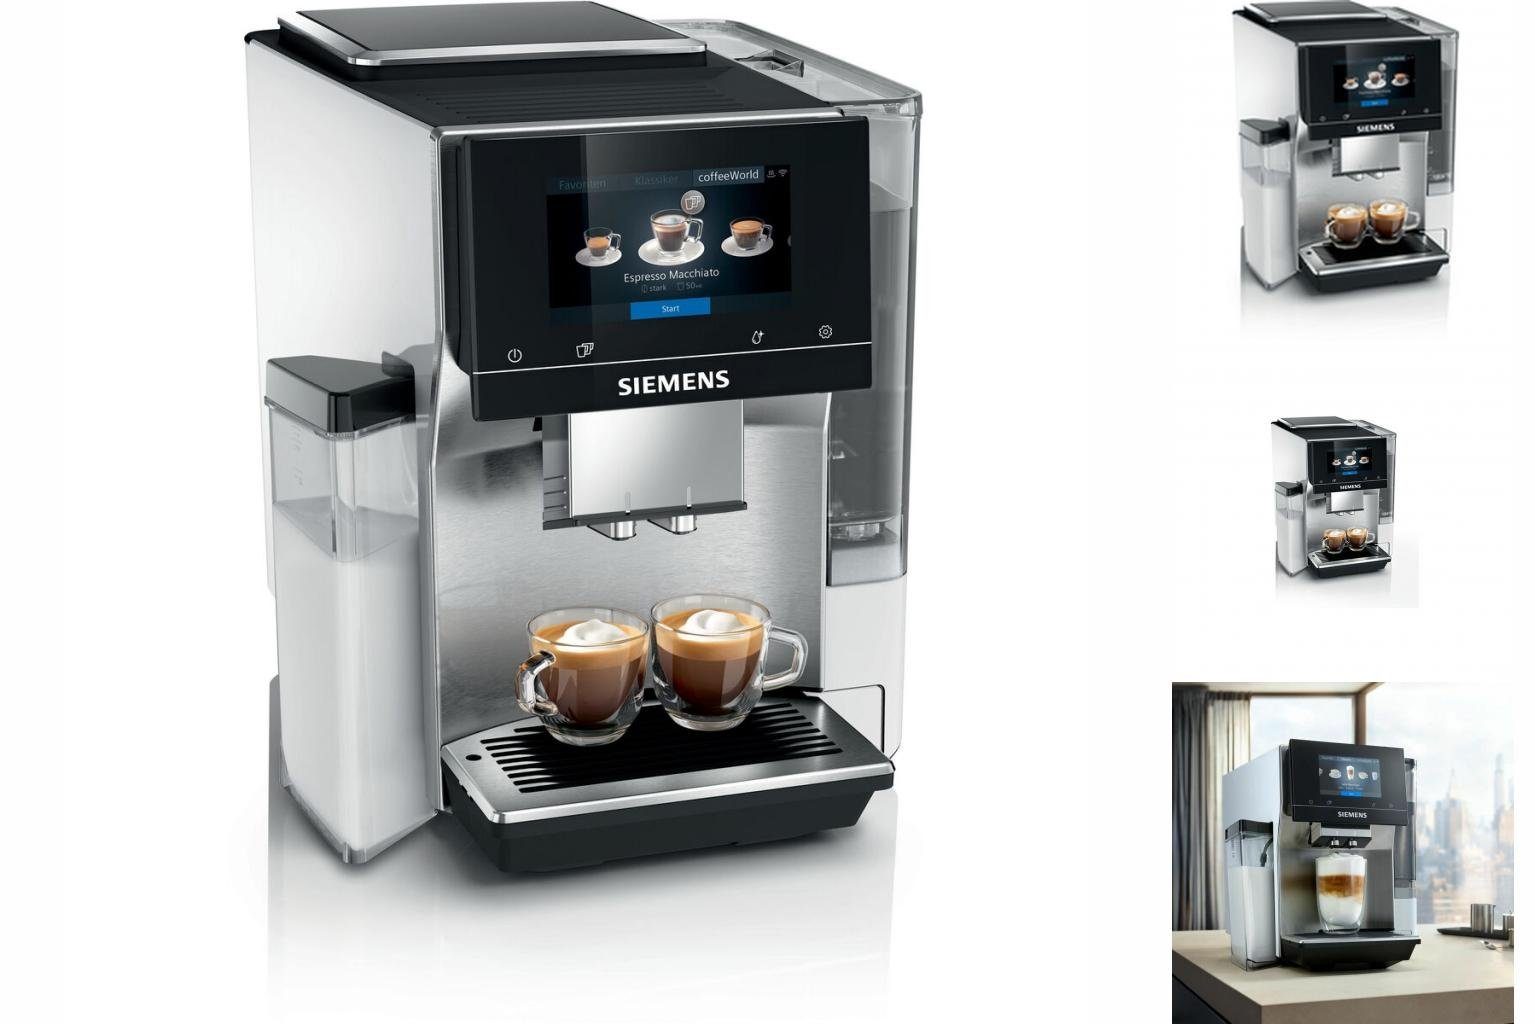 SIEMENS Kaffeevollautomat Superautomatische Kaffeemaschine Siemens AG TQ705R03 1500 W